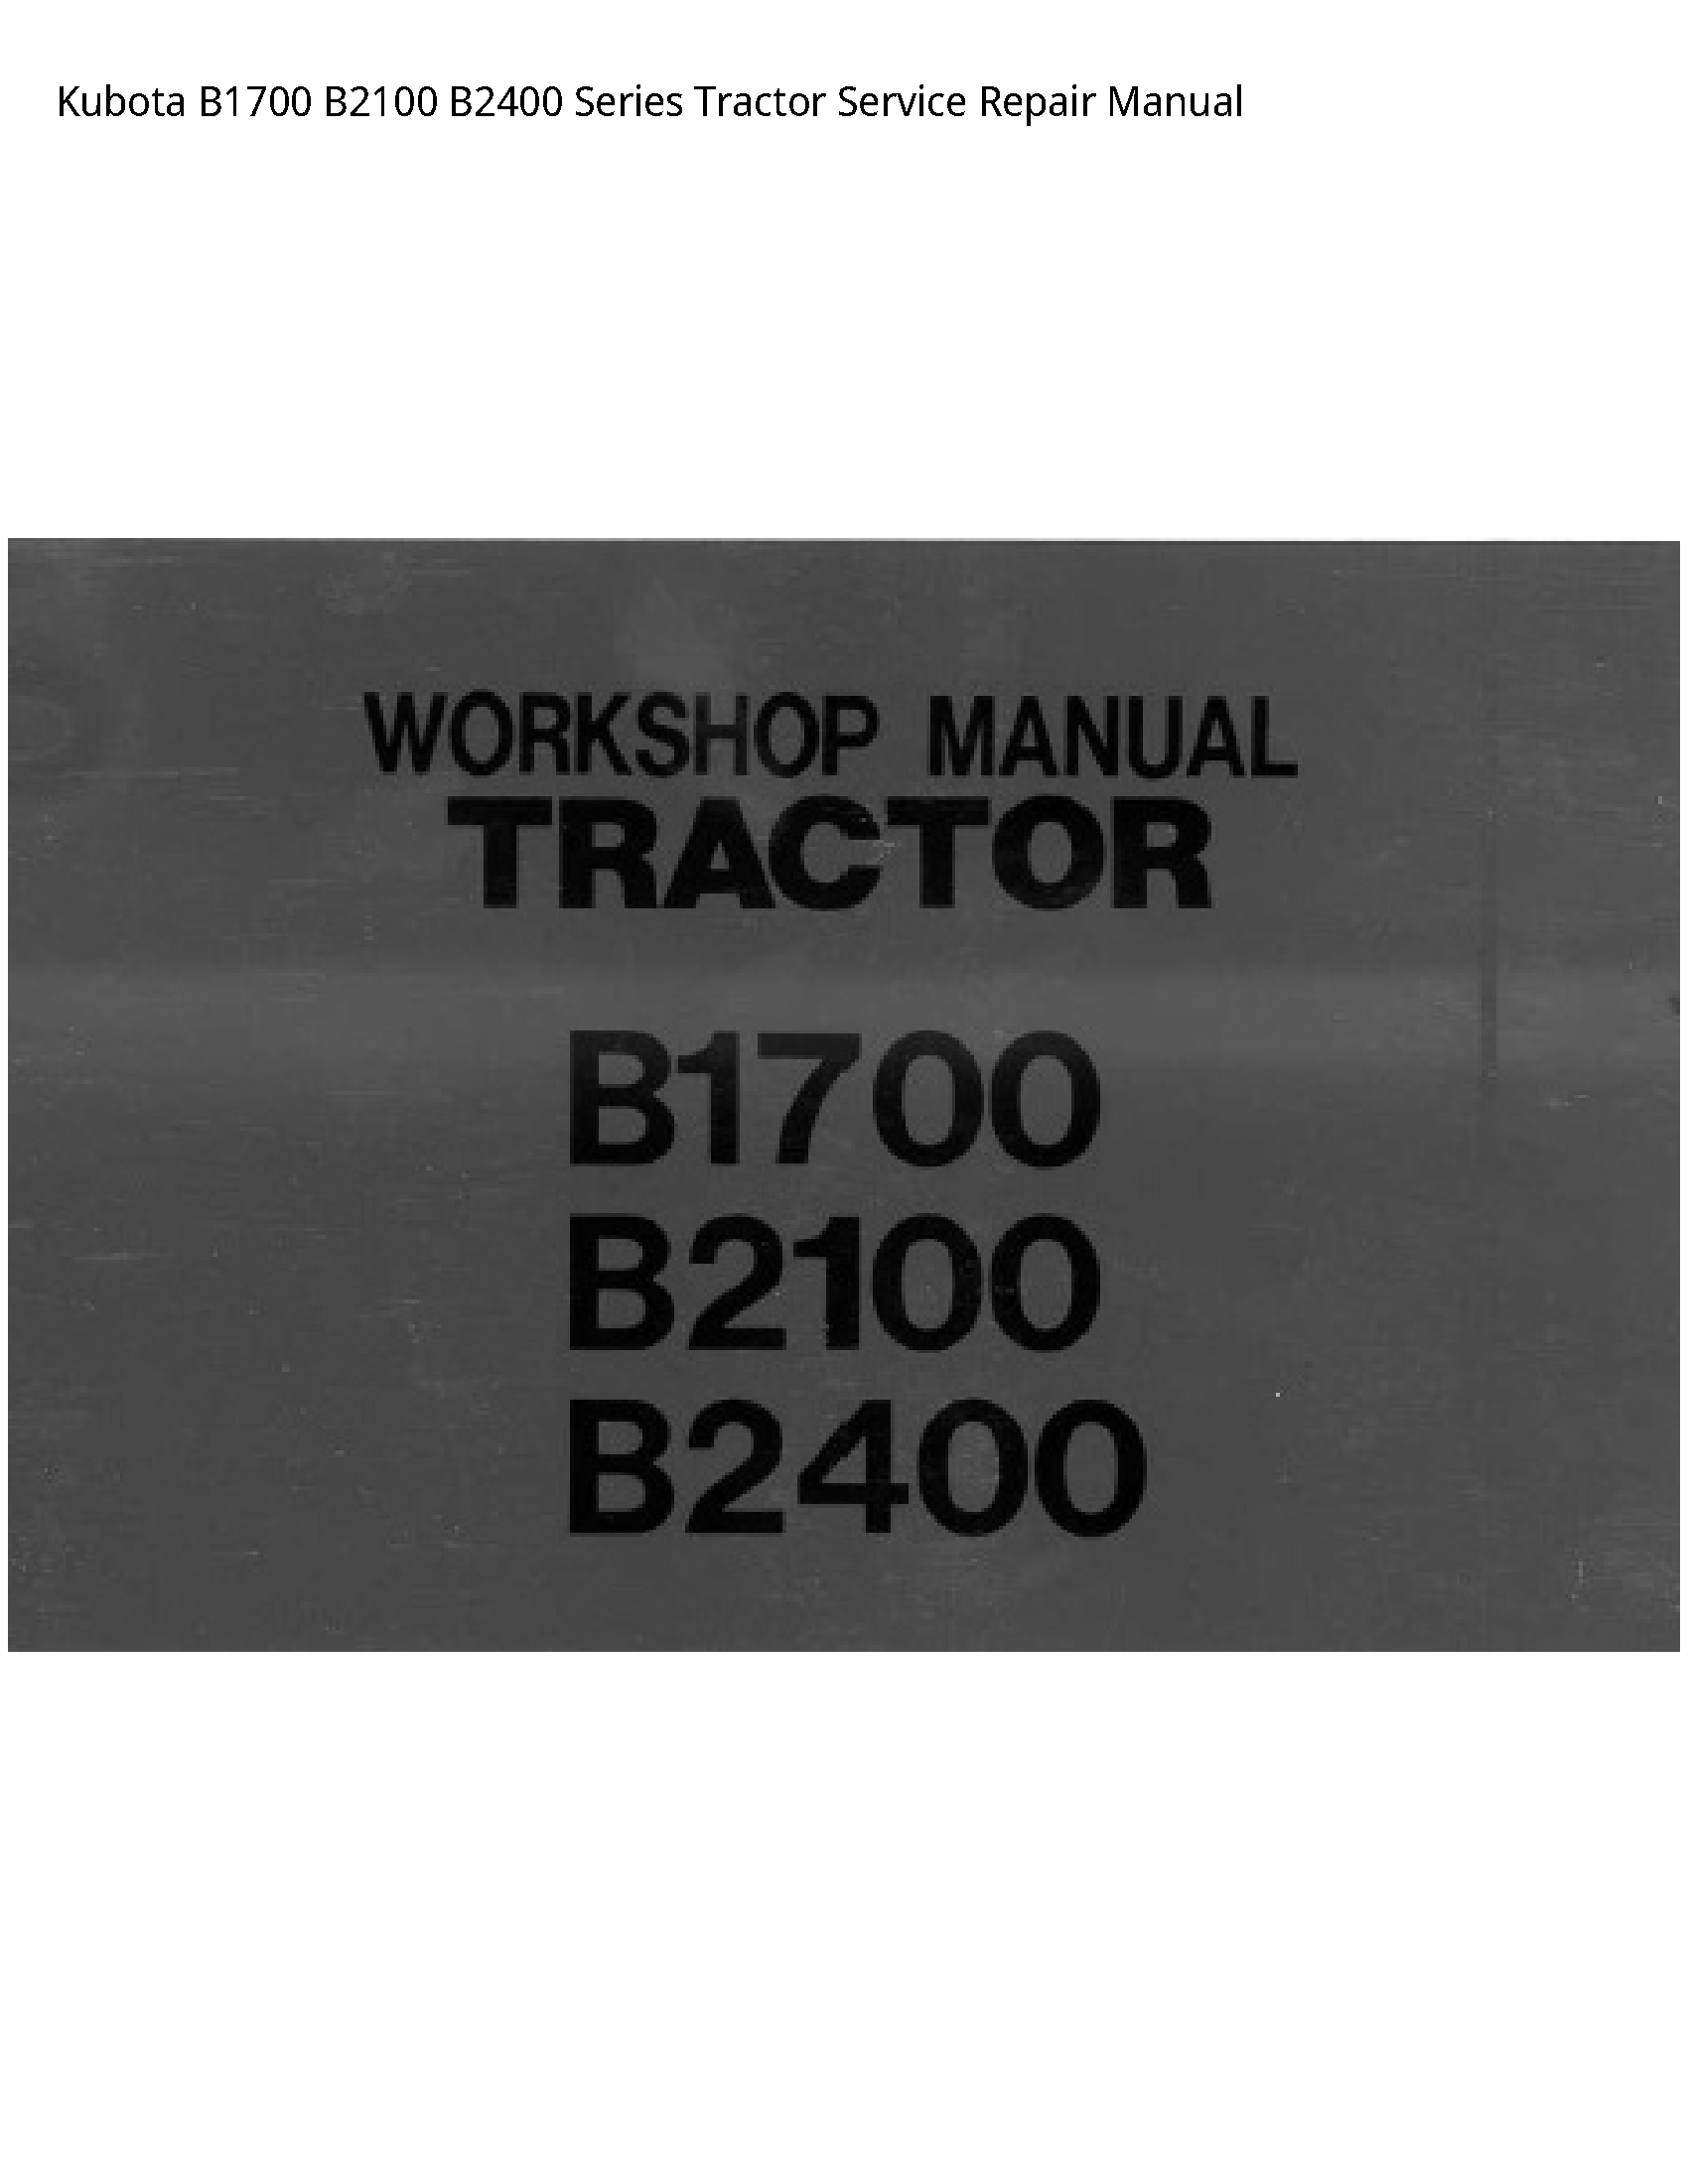 Kubota B1700 B2100 B2400 Series Tractor Service Repair Manual